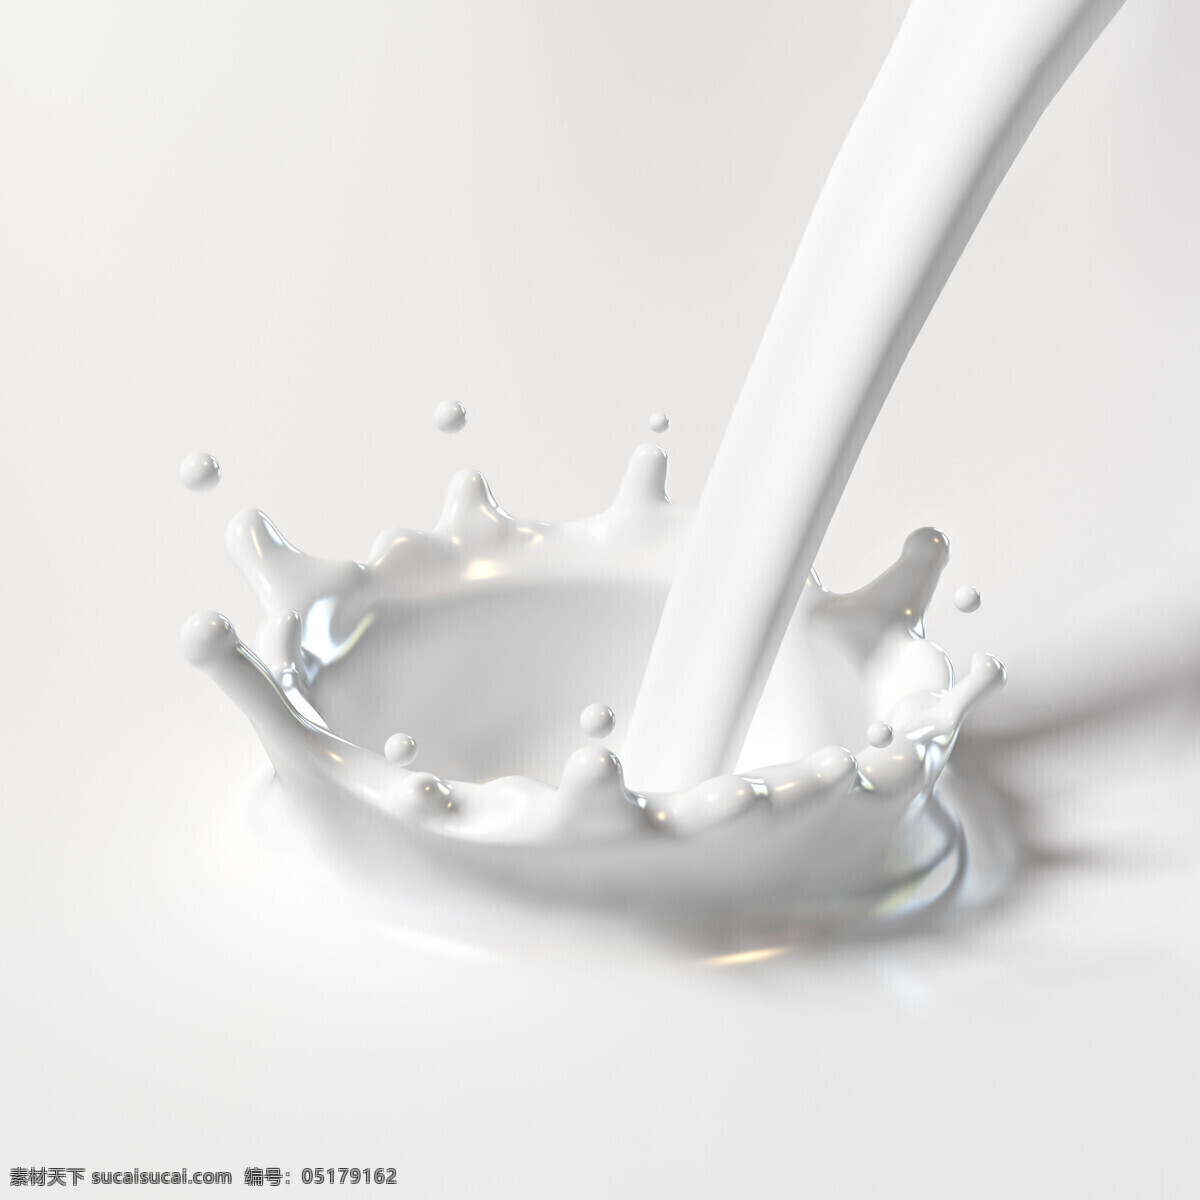 牛奶免费下载 奶 牛奶 喷洒 泼溅 水滴 液体 饮料 倒奶 milk 注入 液态奶 白奶 纯白 风景 生活 旅游餐饮